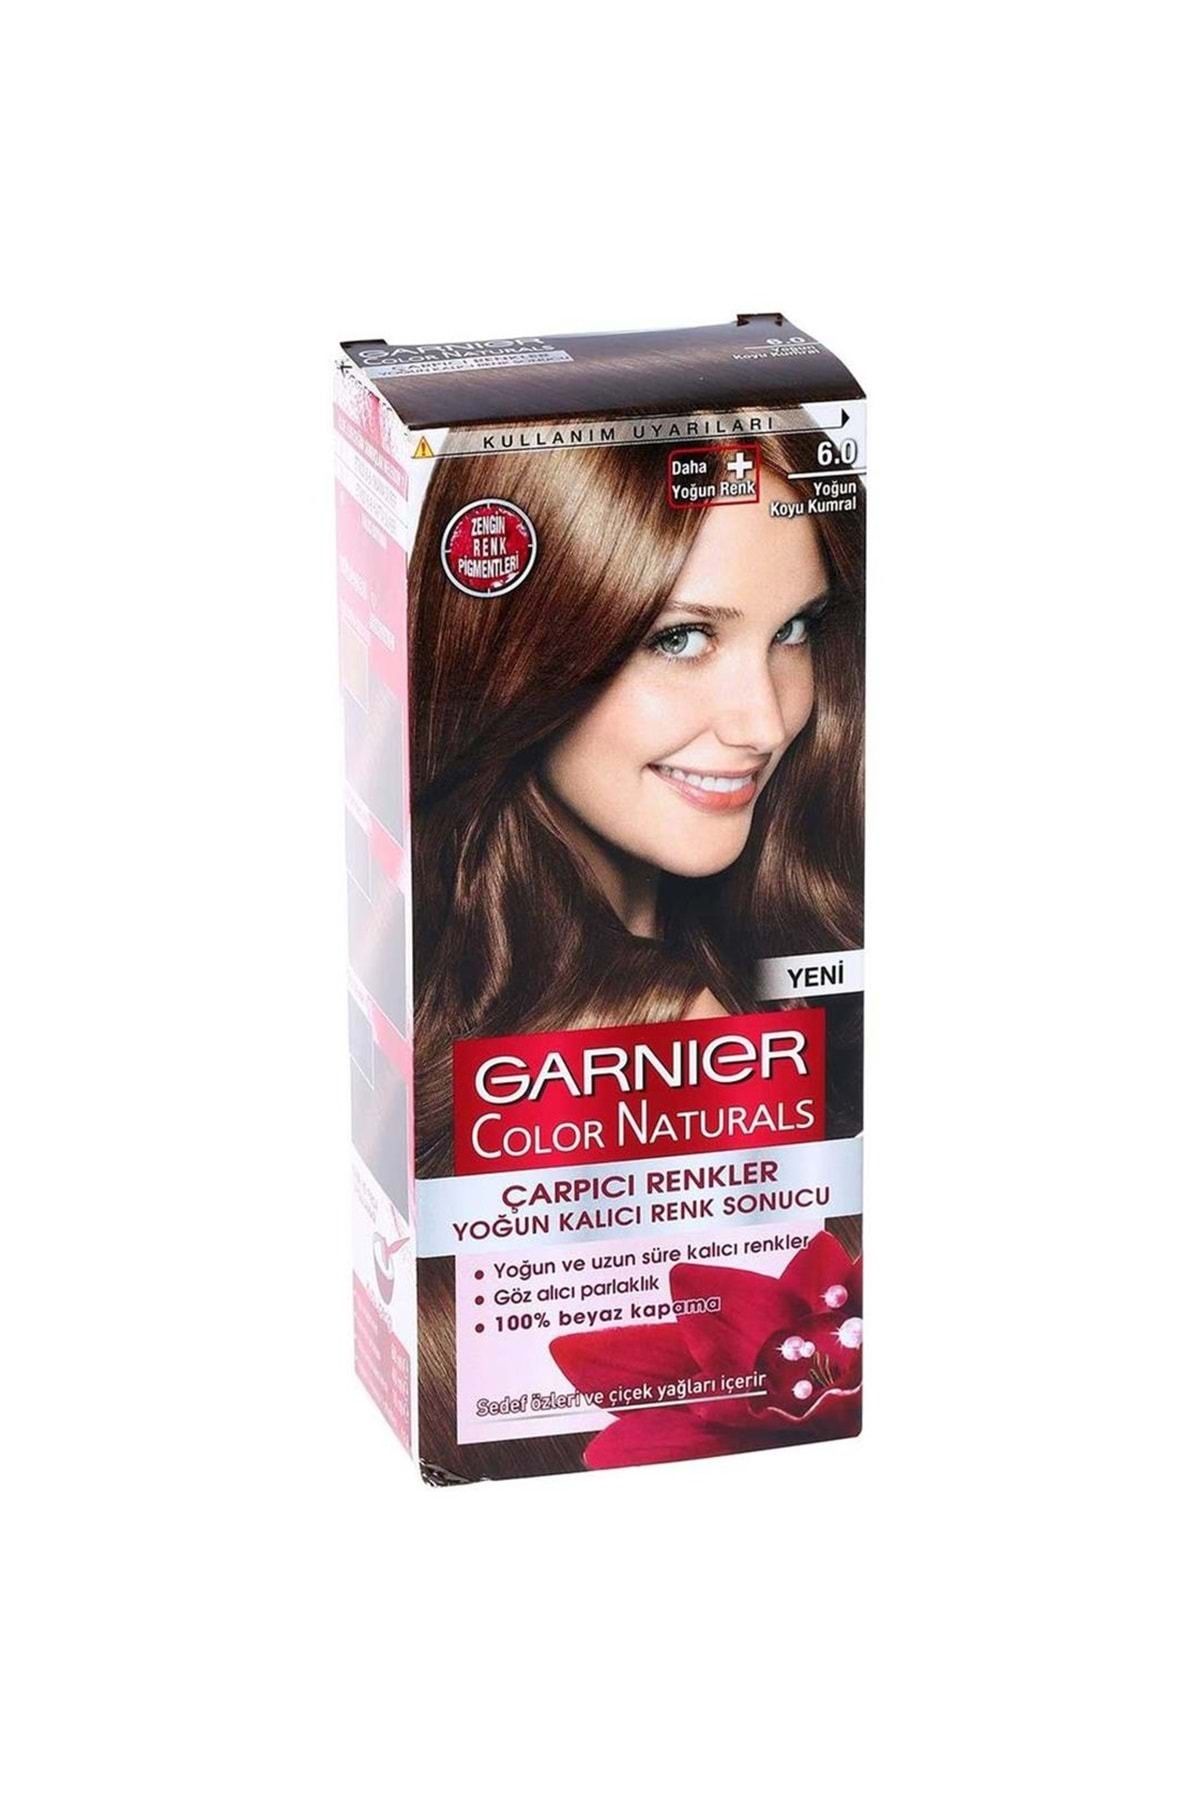 Garnier Çarpıcı Renkler Saç Boyası 6.0 Yoğun Koyu Kumral